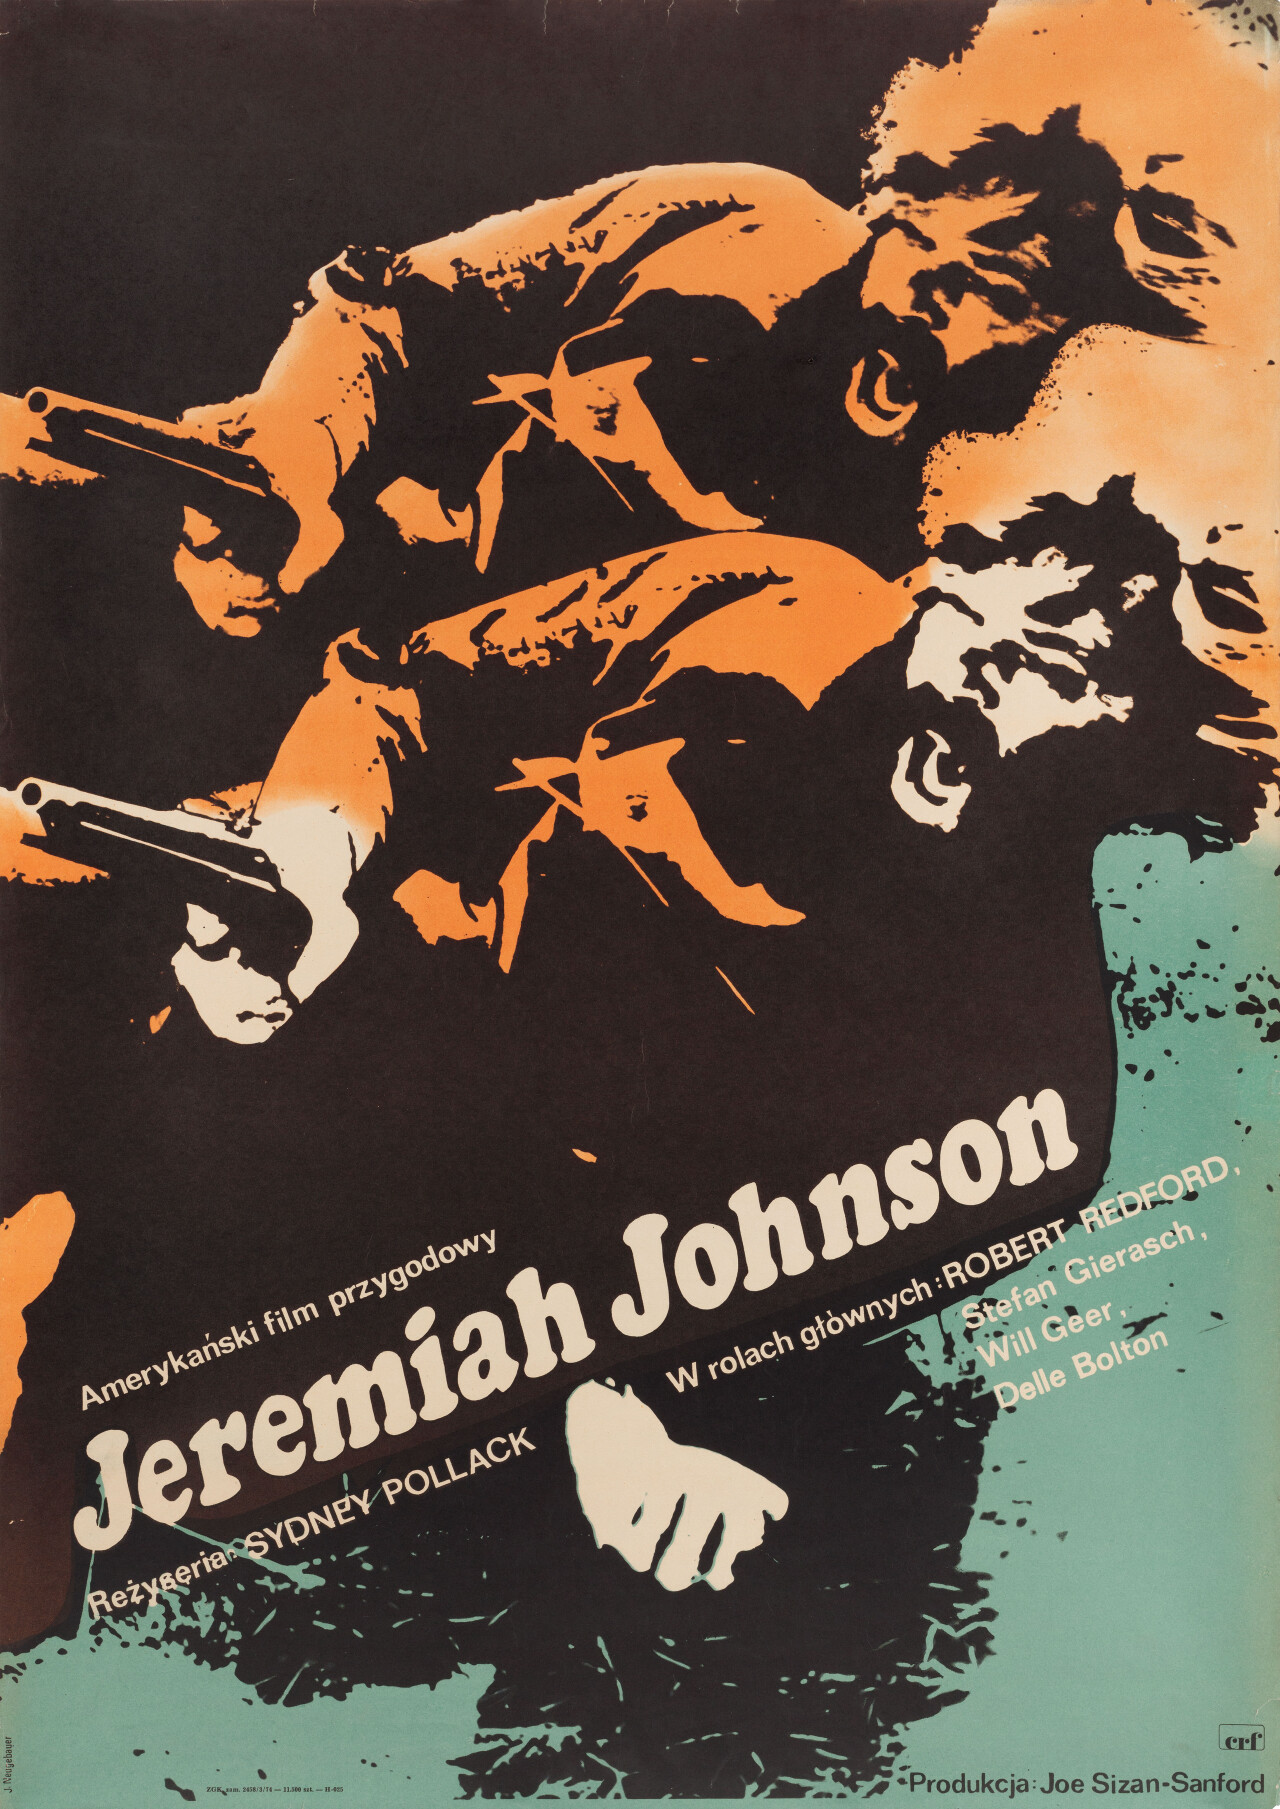 Иеремия Джонсон (Jeremiah Johnson, 1972), режиссёр Сидни Поллак, польский постер к фильму, автор Яцек Нойгебауэр (графический дизайн, 1972 год)